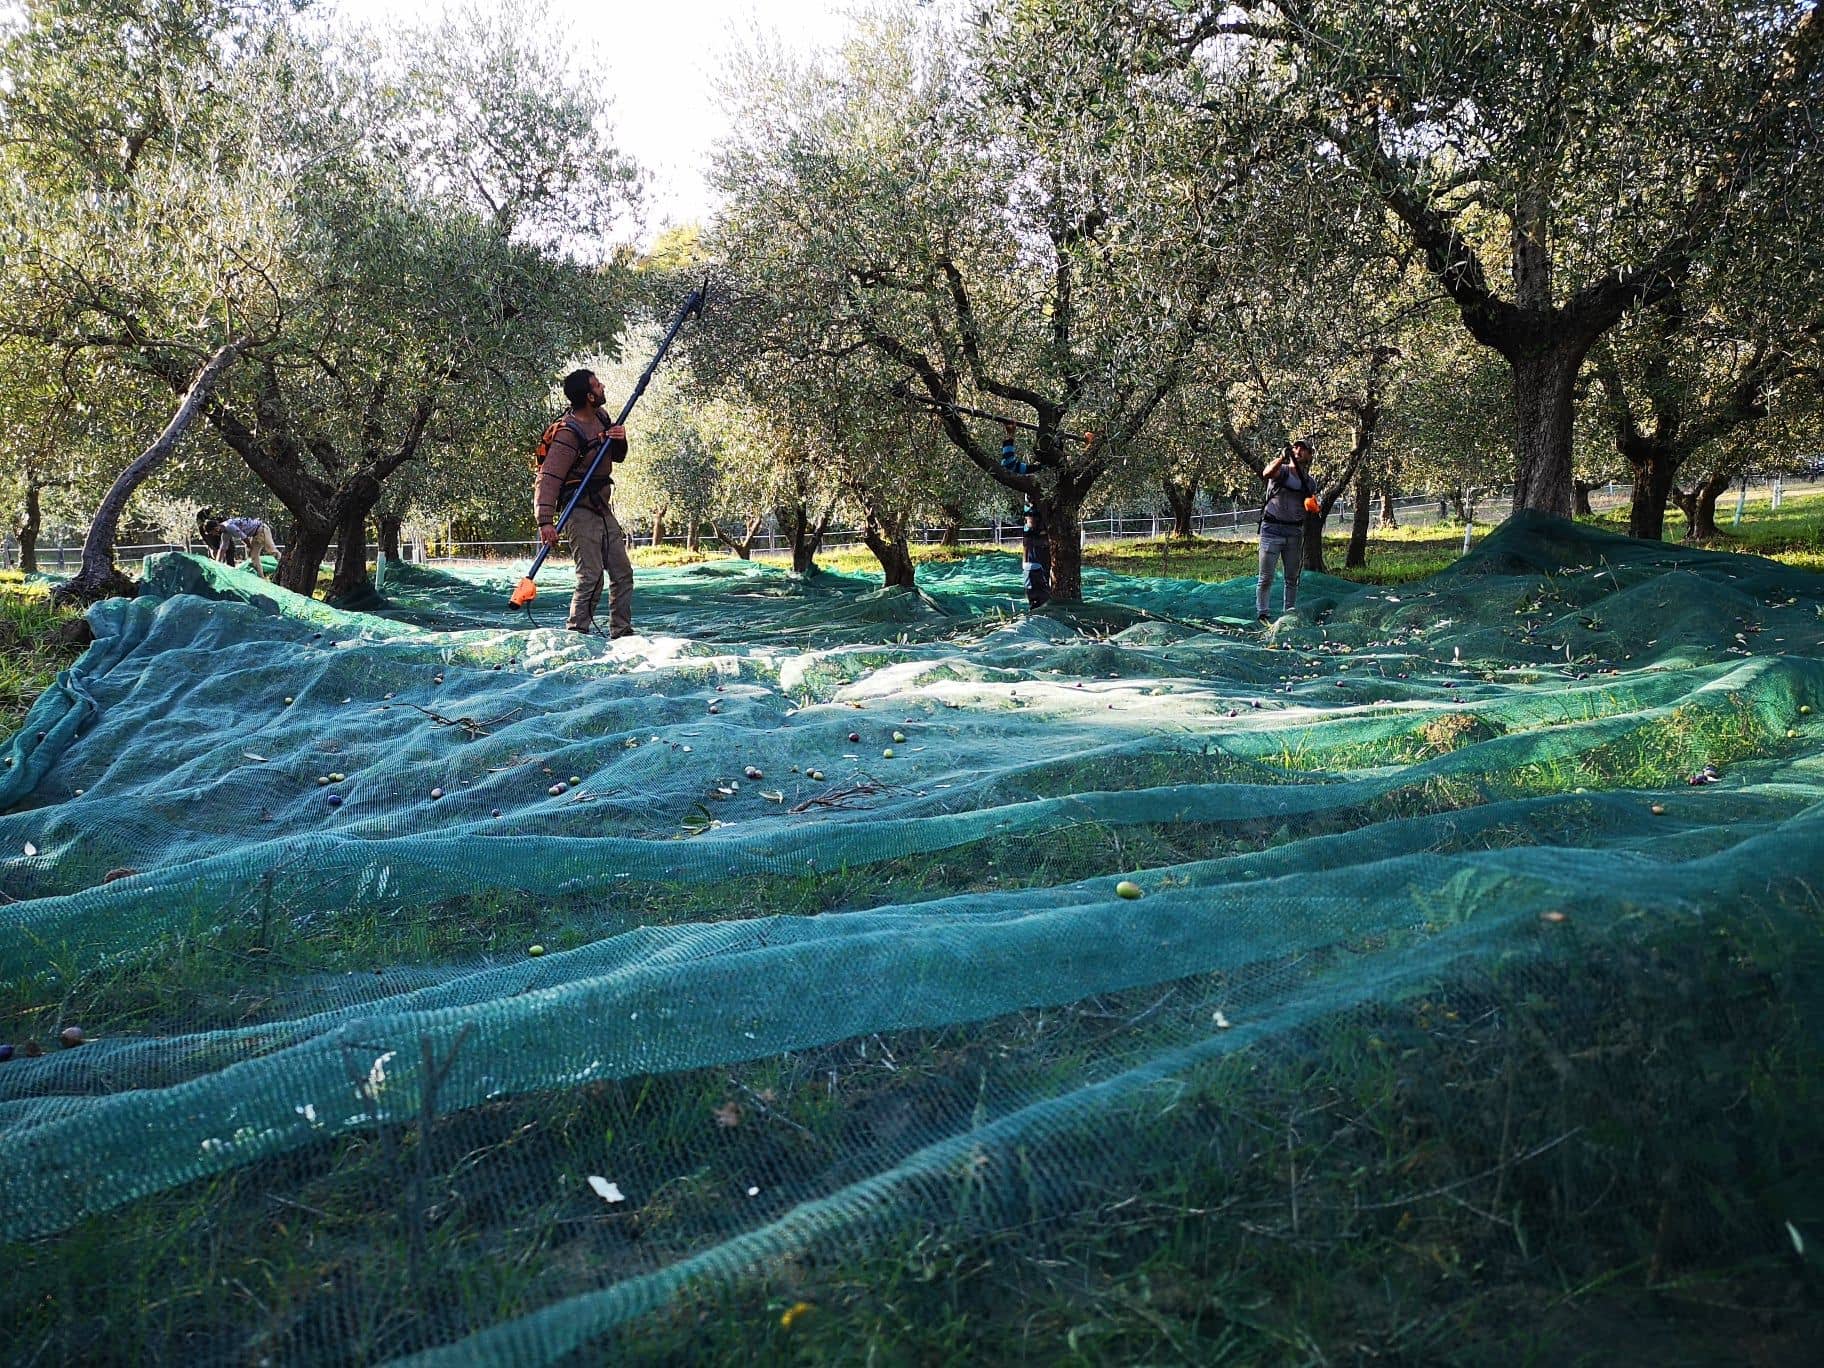 europa-die-besten-olivenöle-wettbewerbe-produktion-toskanische-produzenten-triumph-bei-nyiooc-Spätfröste-und-Sommerhitze-Olivenöl-Zeiten überwinden